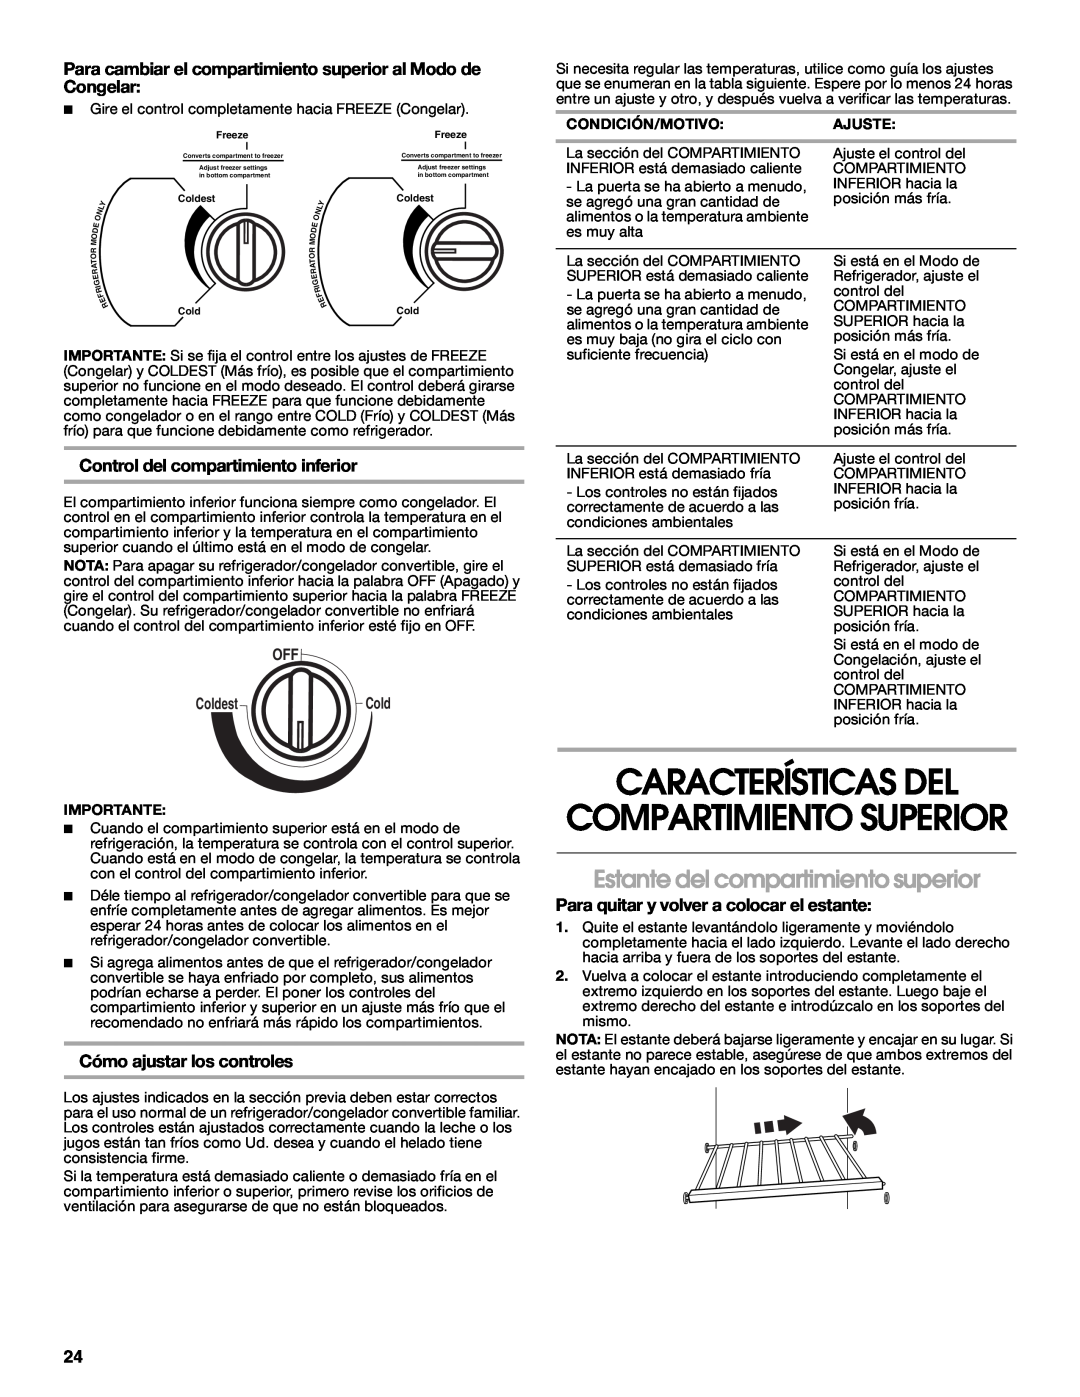 Whirlpool GAFZ21XXRK01 Características Del, Compartimiento Superior, Estante del compartimiento superior, OFF ColdestCold 